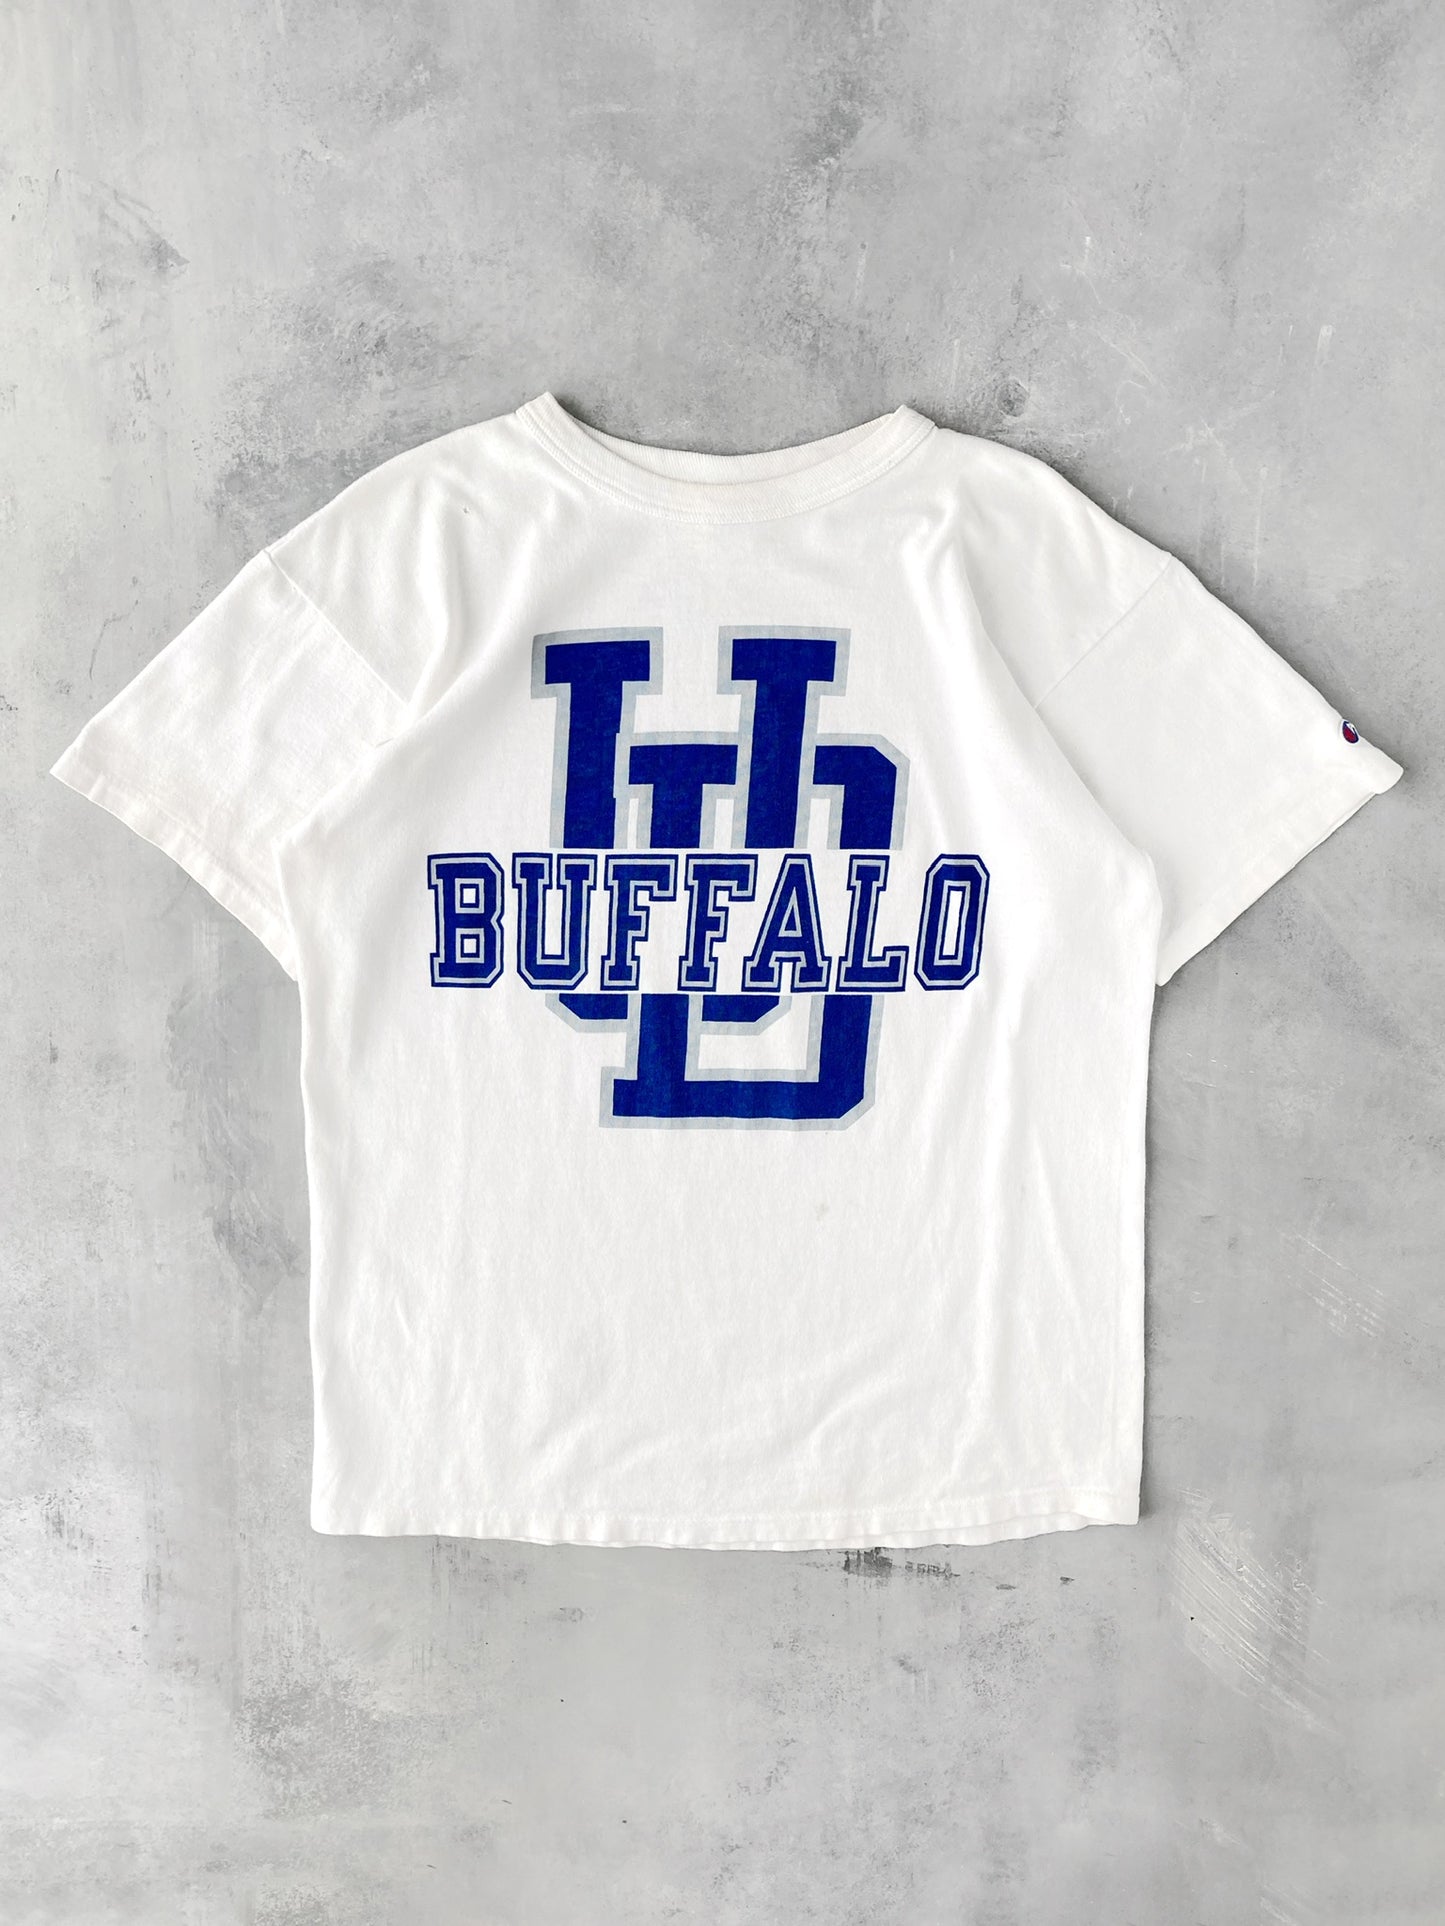 University of Buffalo Champion T-Shirt 80's - Large